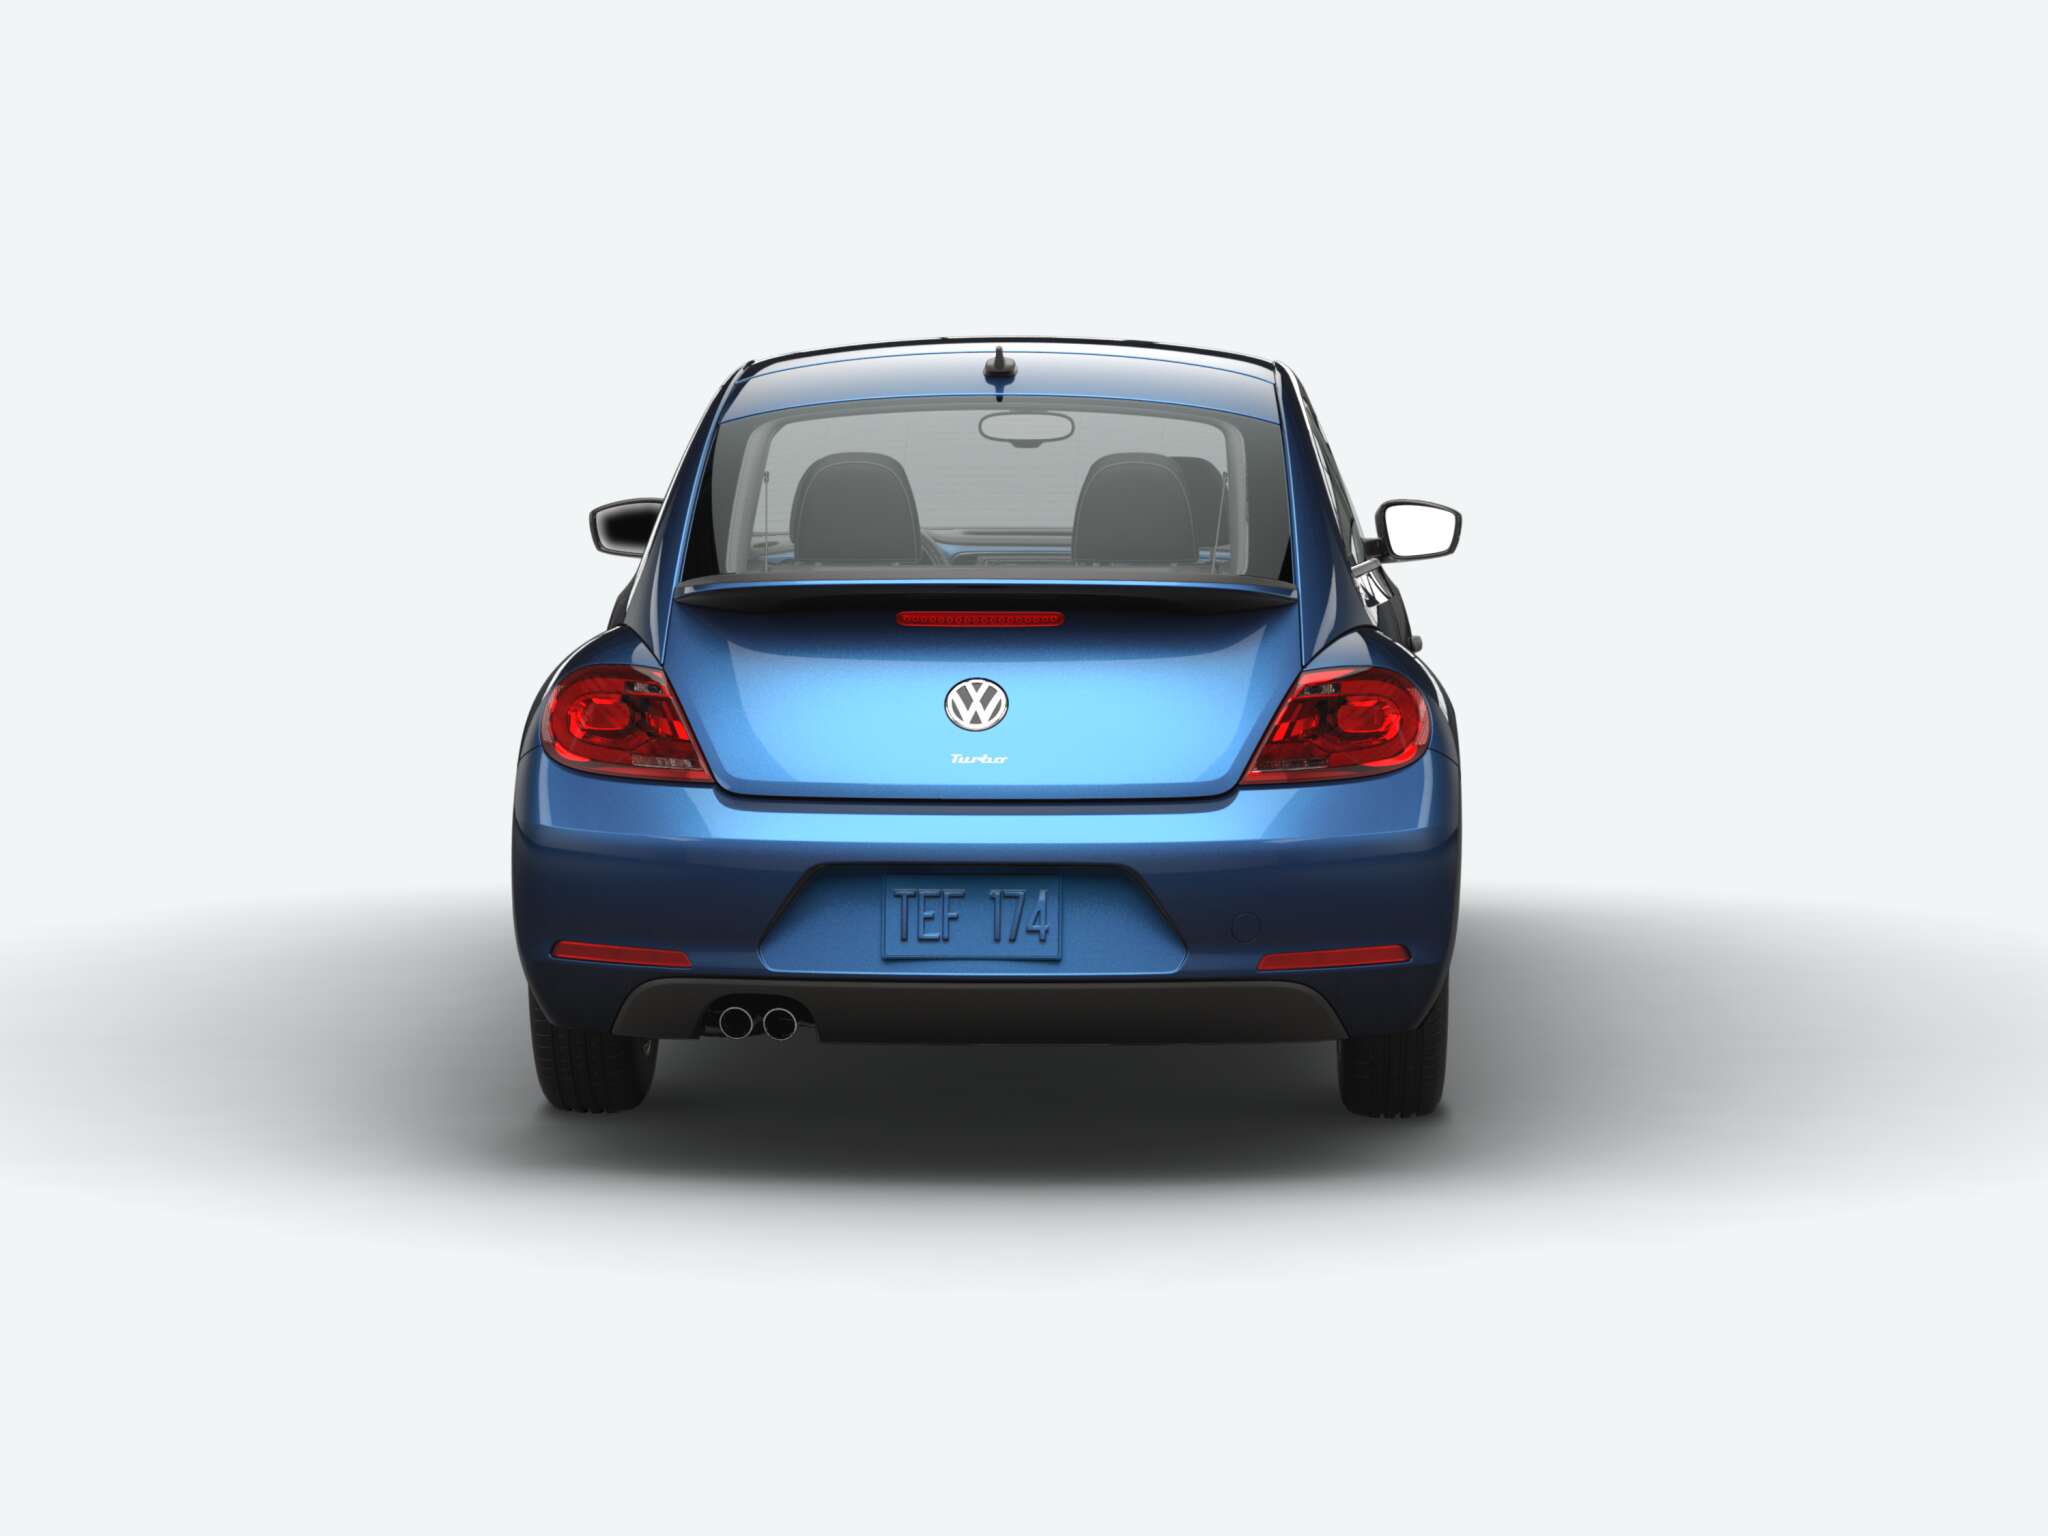 Volkswagen Beetle S rear view